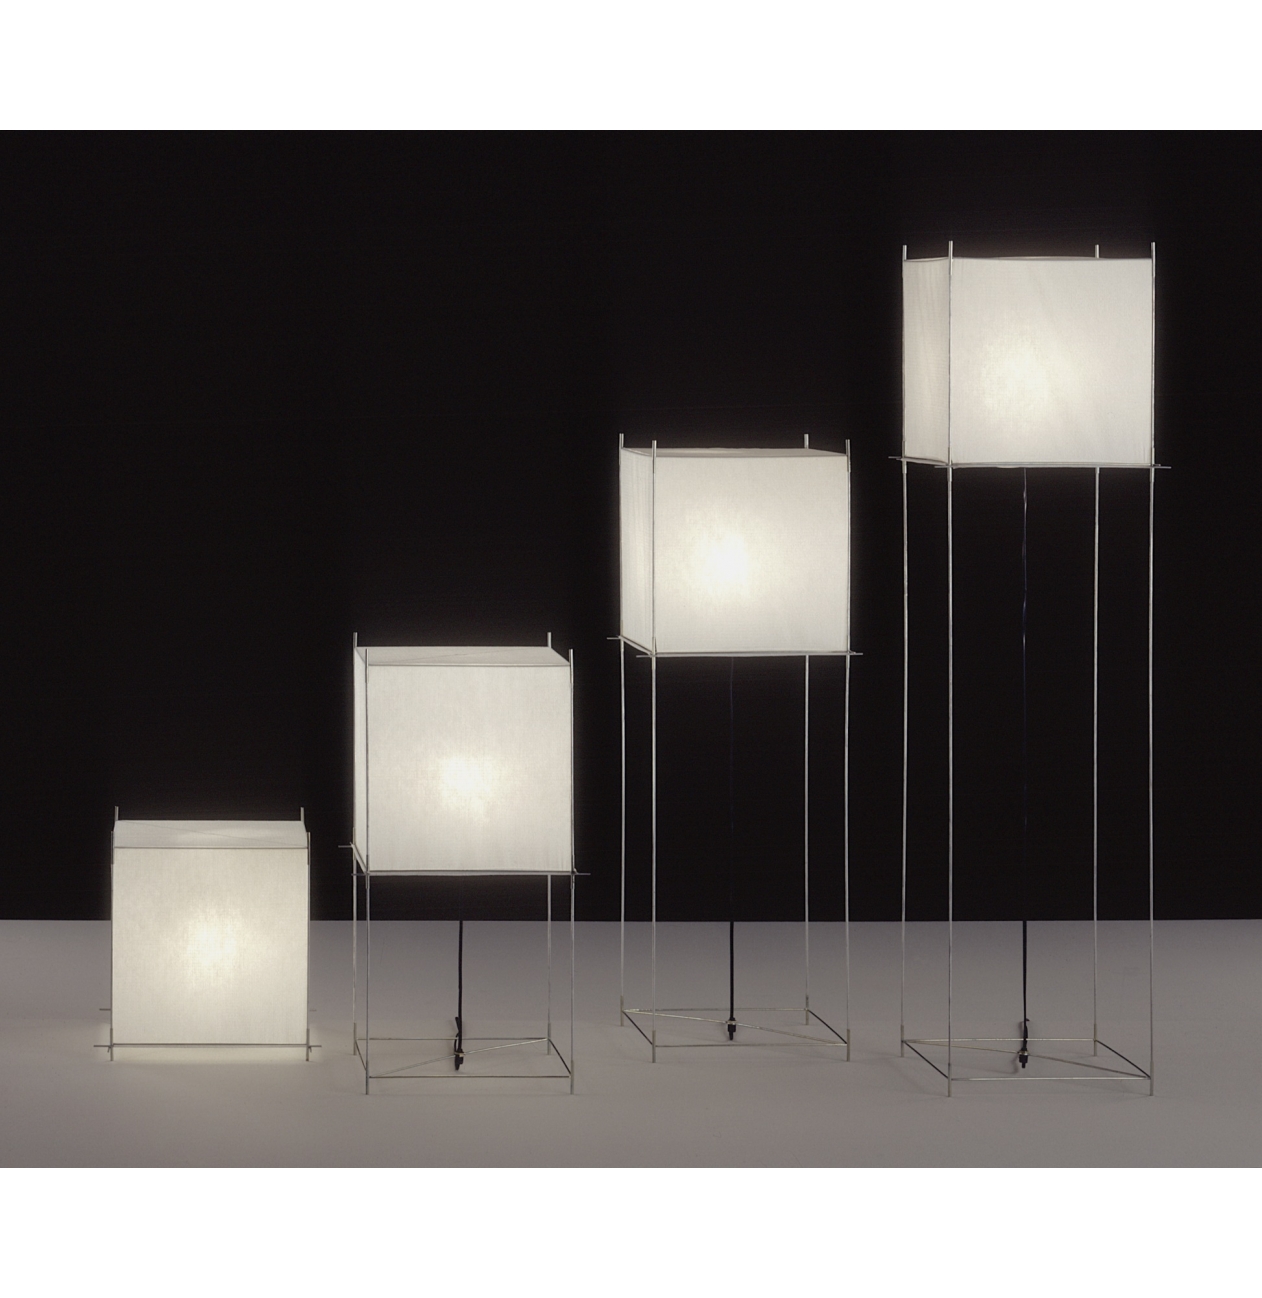 Mount Bank affix Haarvaten Hollands Licht - 2x Lotek Classic Frame Metaal | Versteeg Lichtstudio